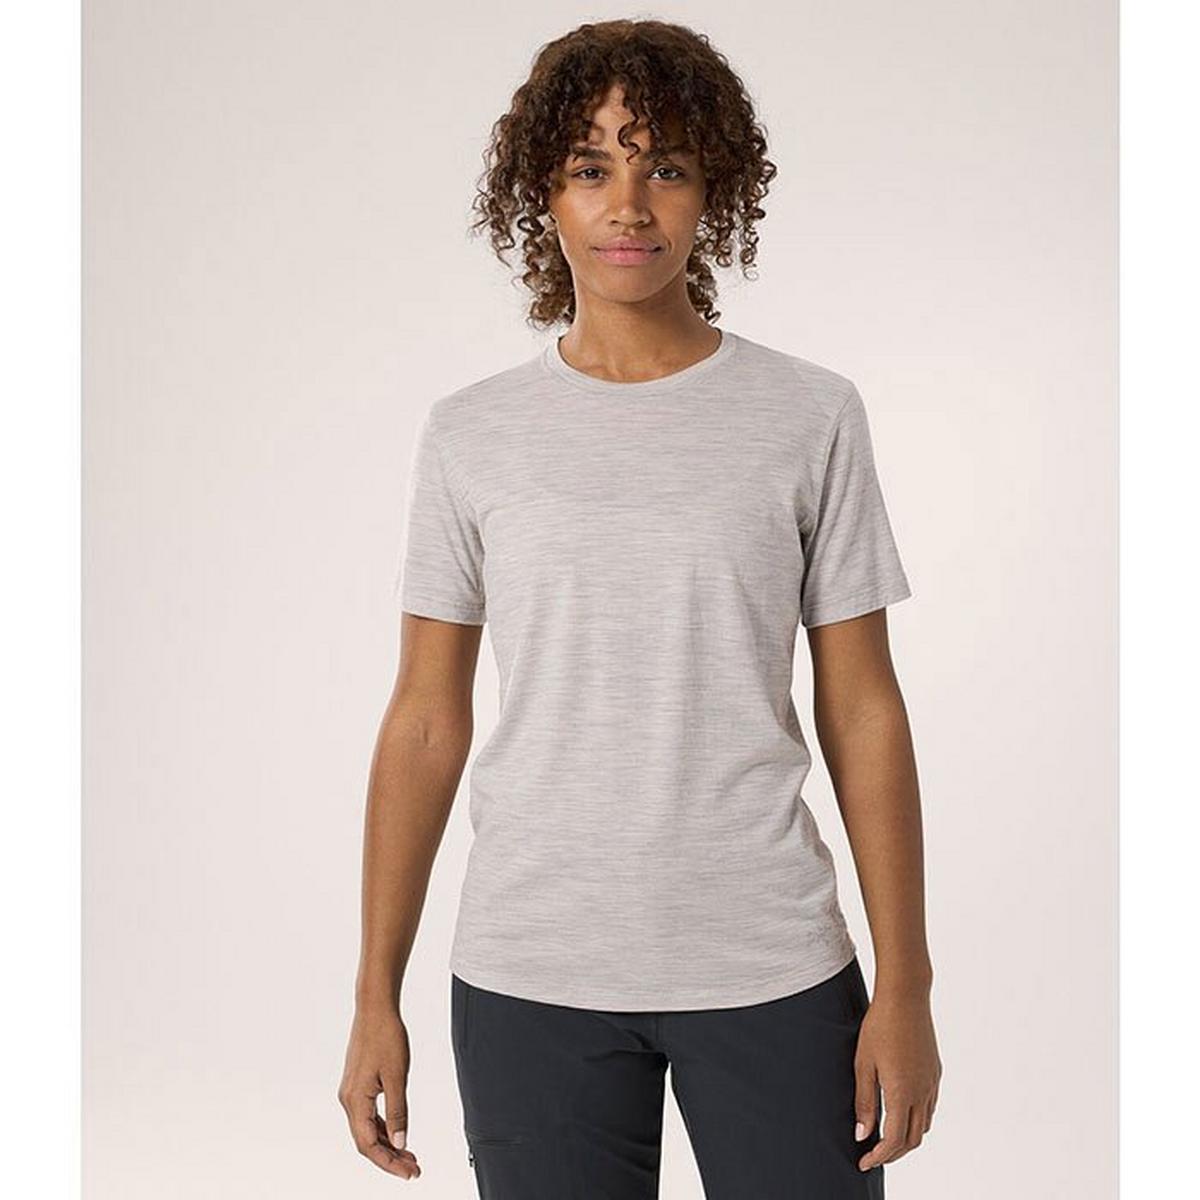 Women's Lana Merino Wool Crew Short Sleeve T-Shirt